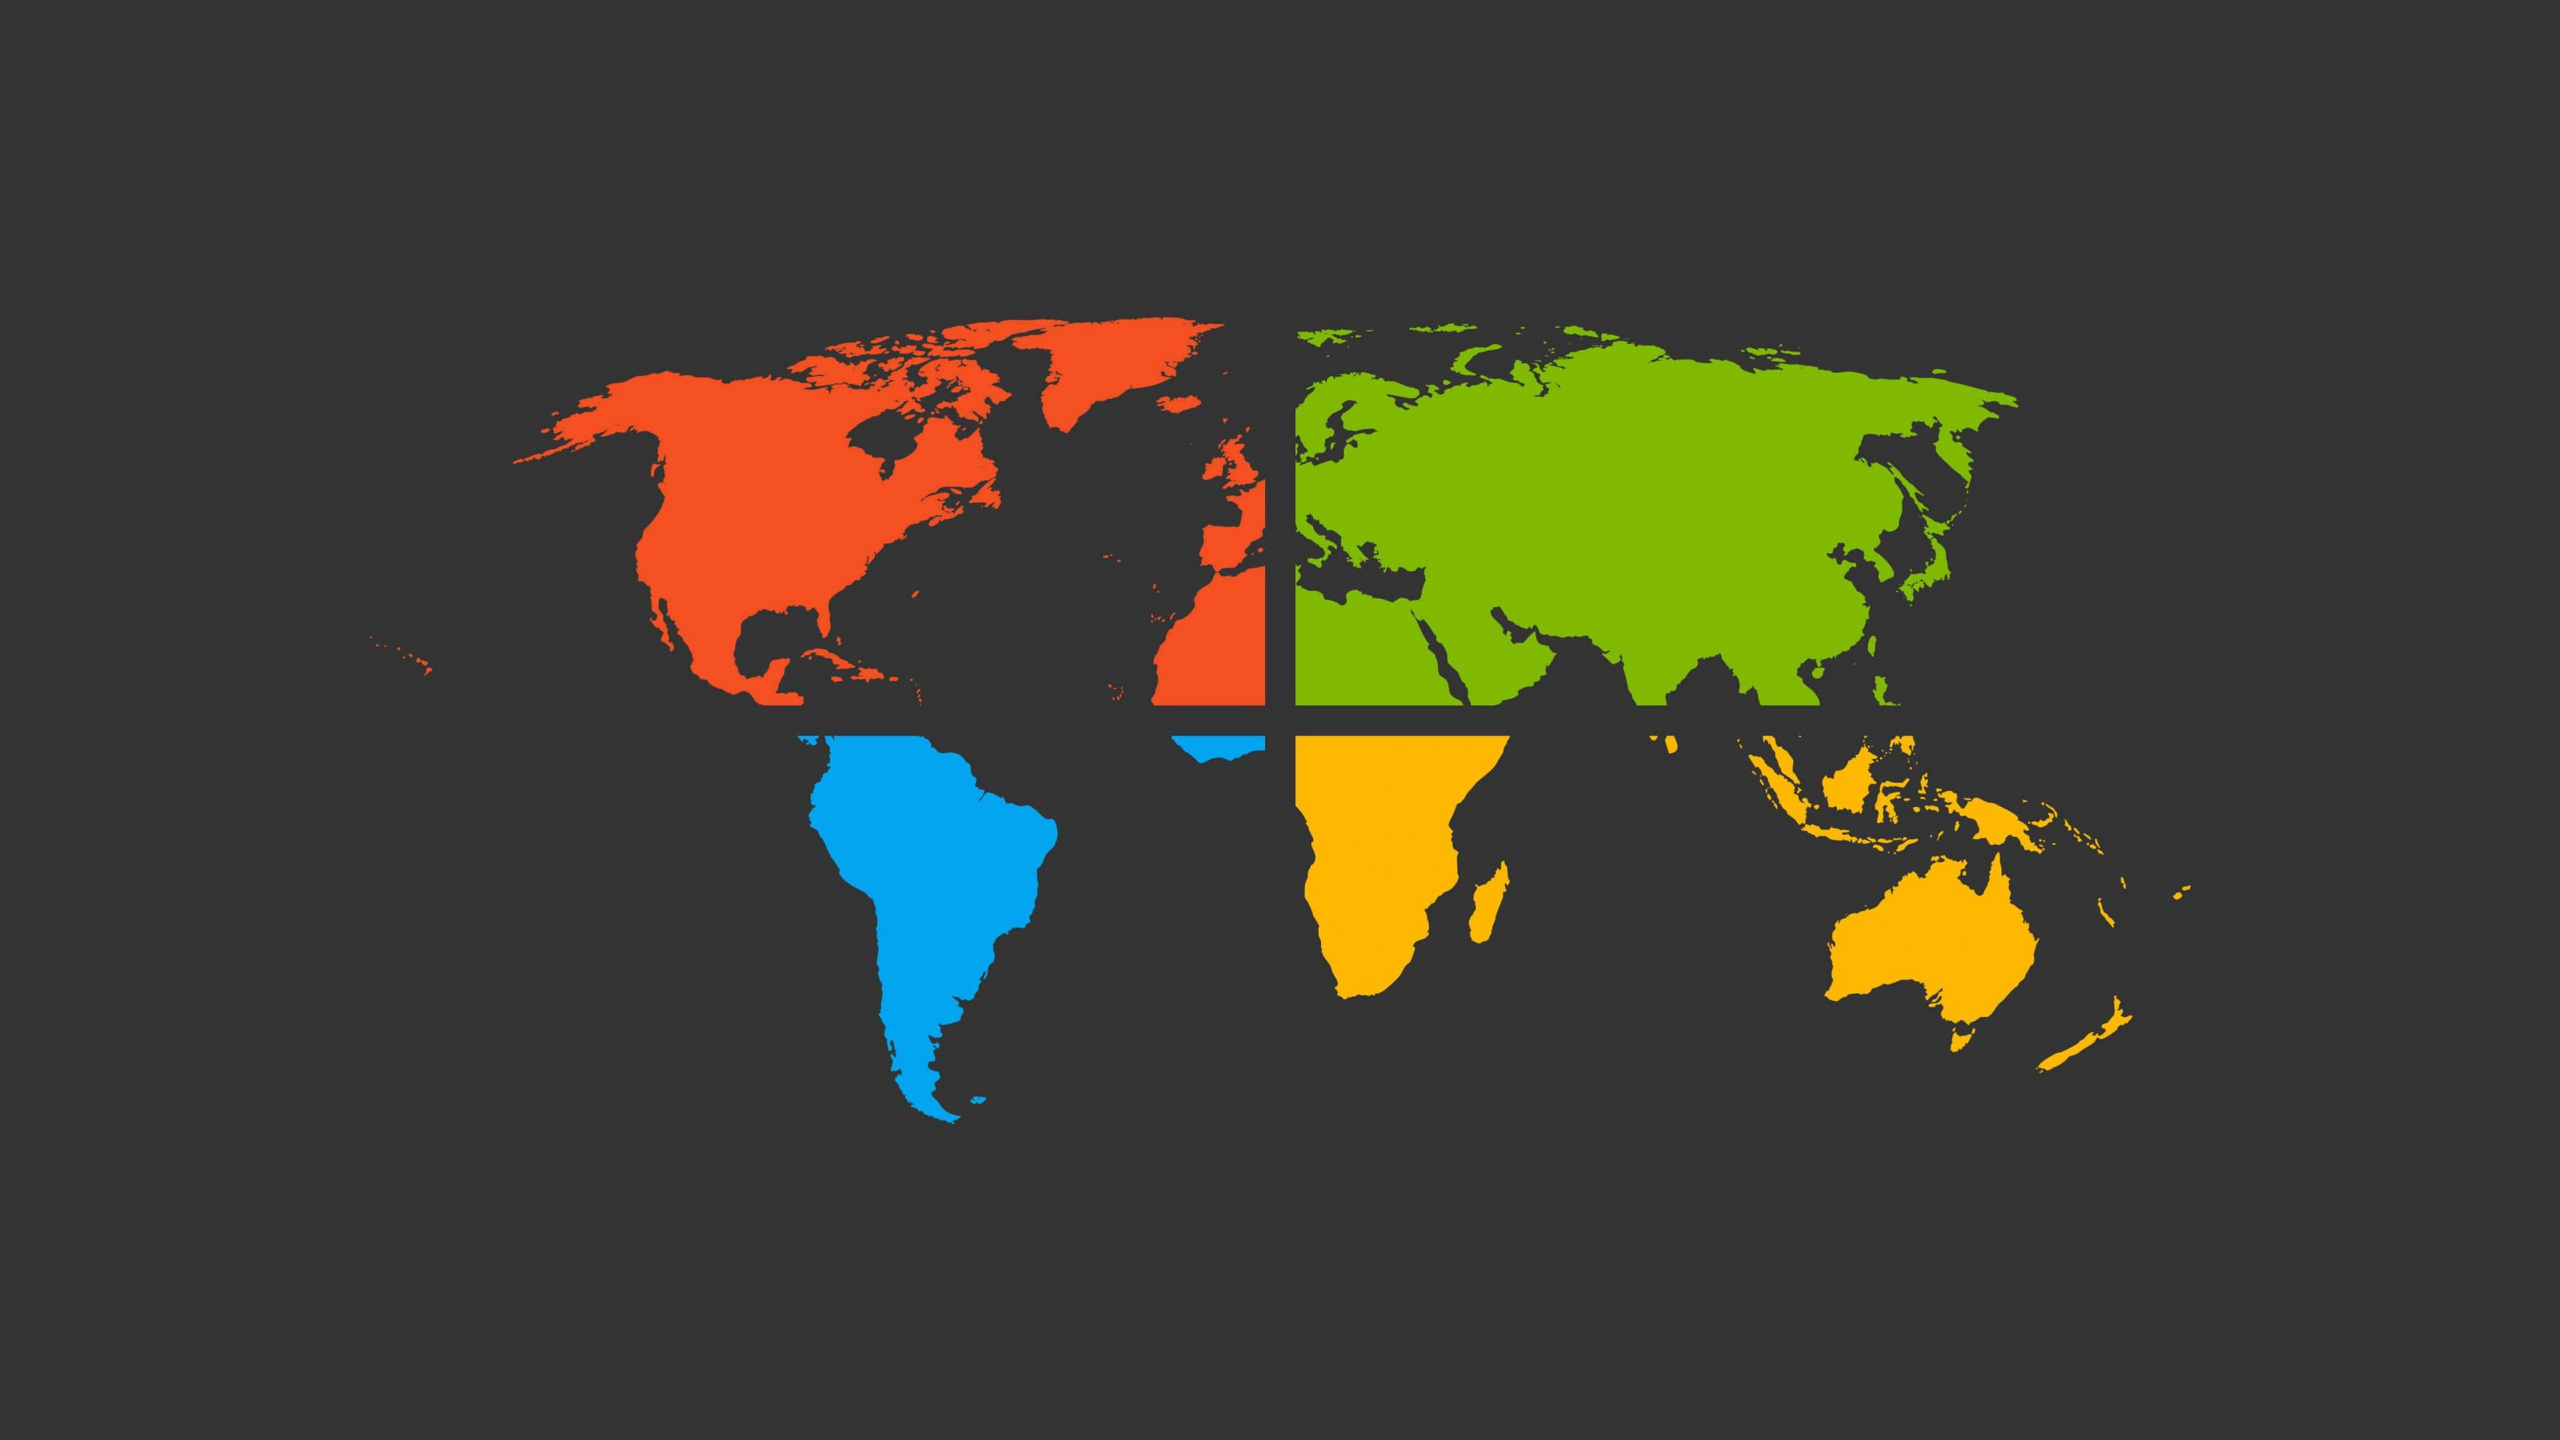 世界地图, 地球, 地图, 矢量图形, 色彩 壁纸 2560x1440 允许